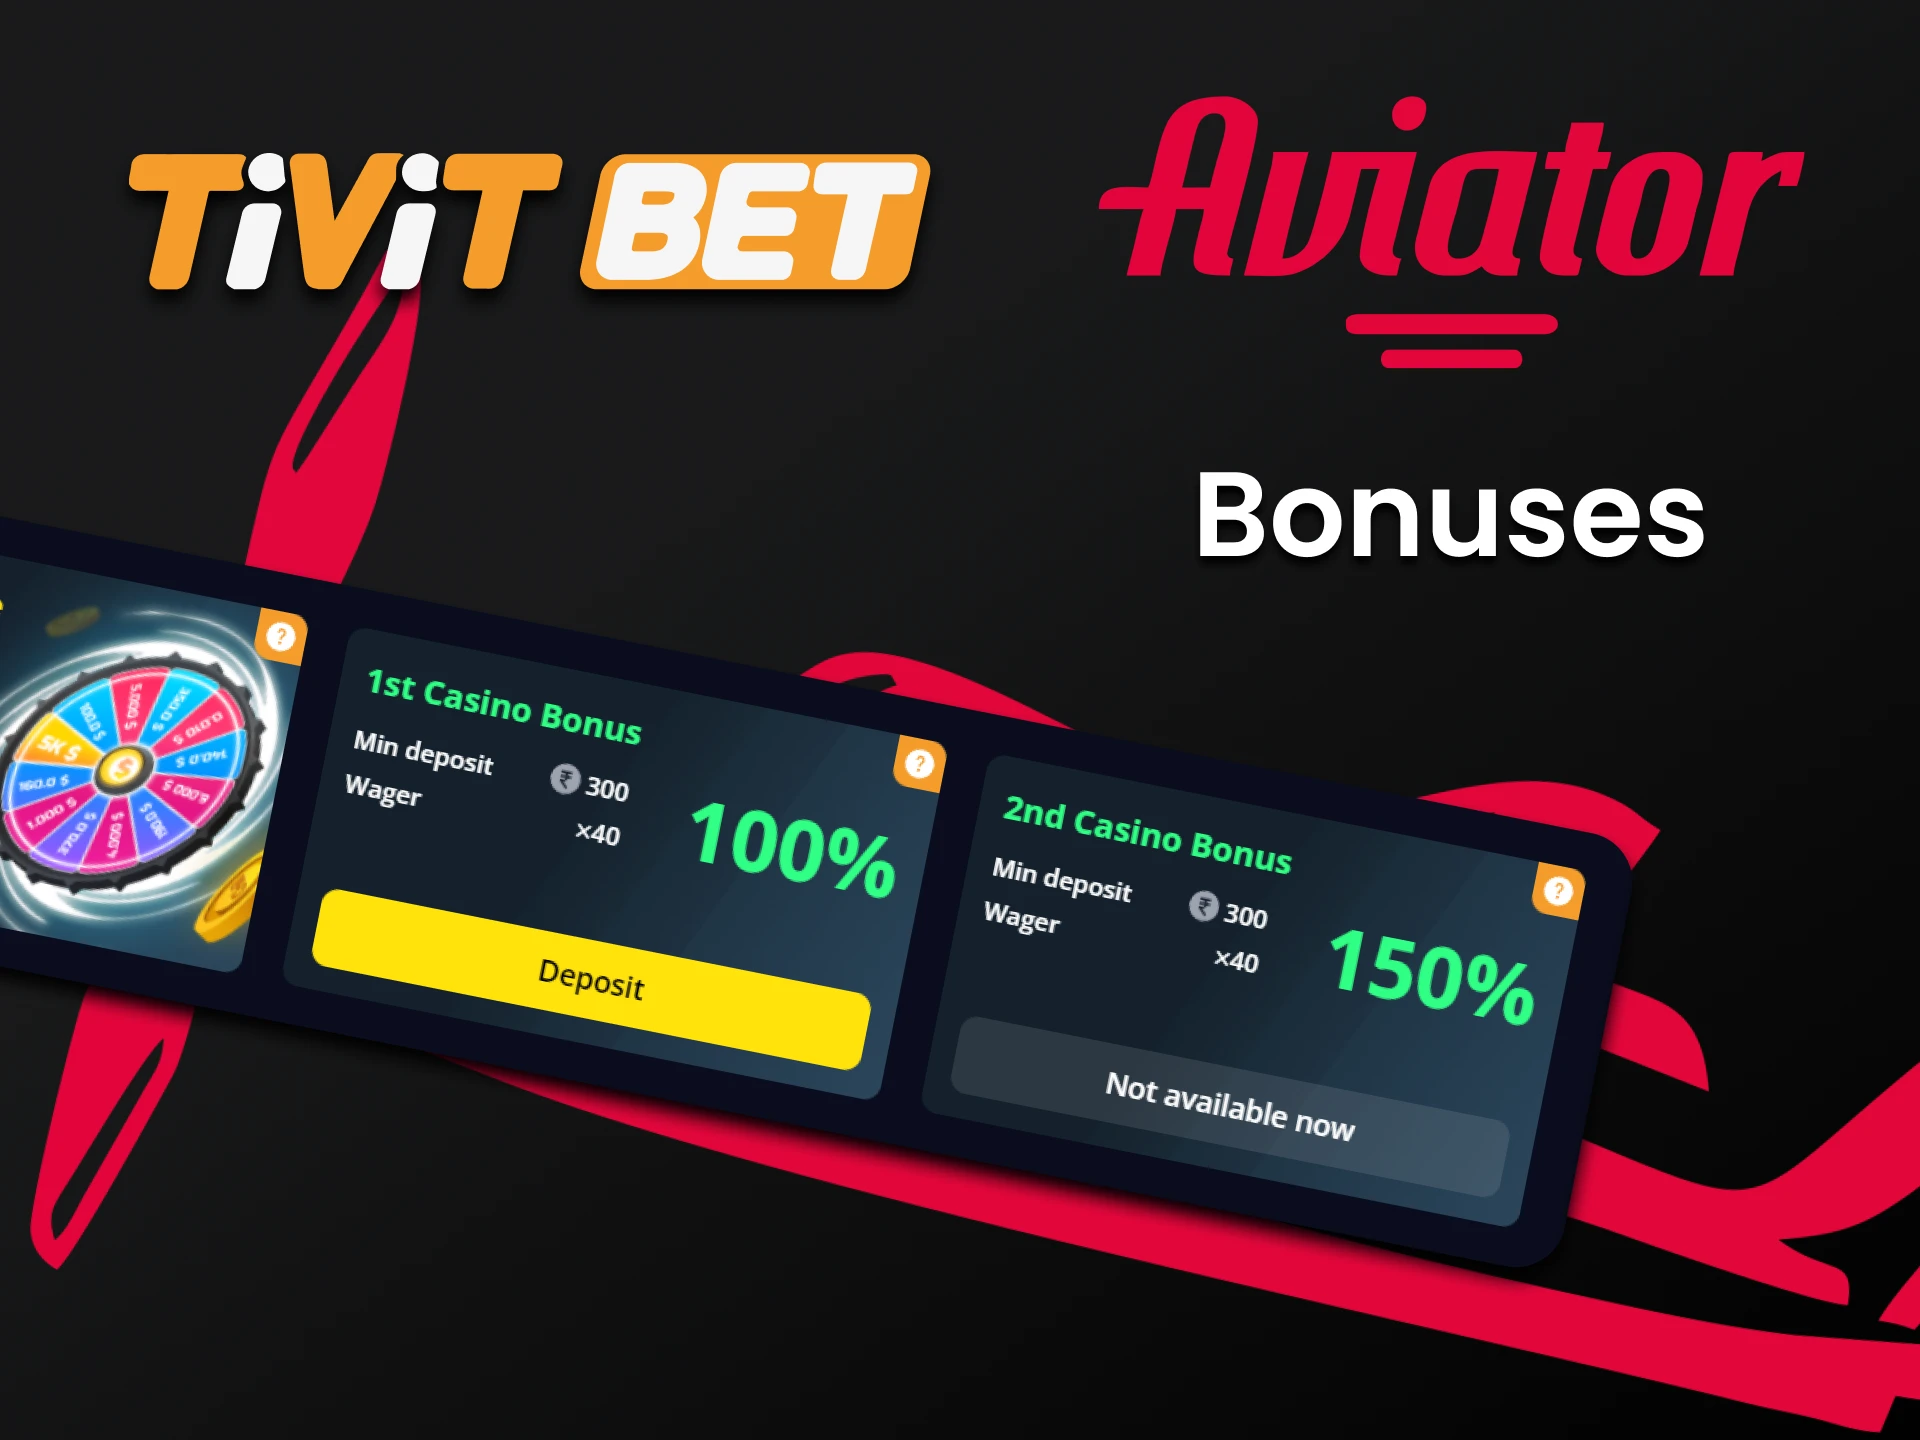 Use bonuses from Tivitbet to play Aviator.